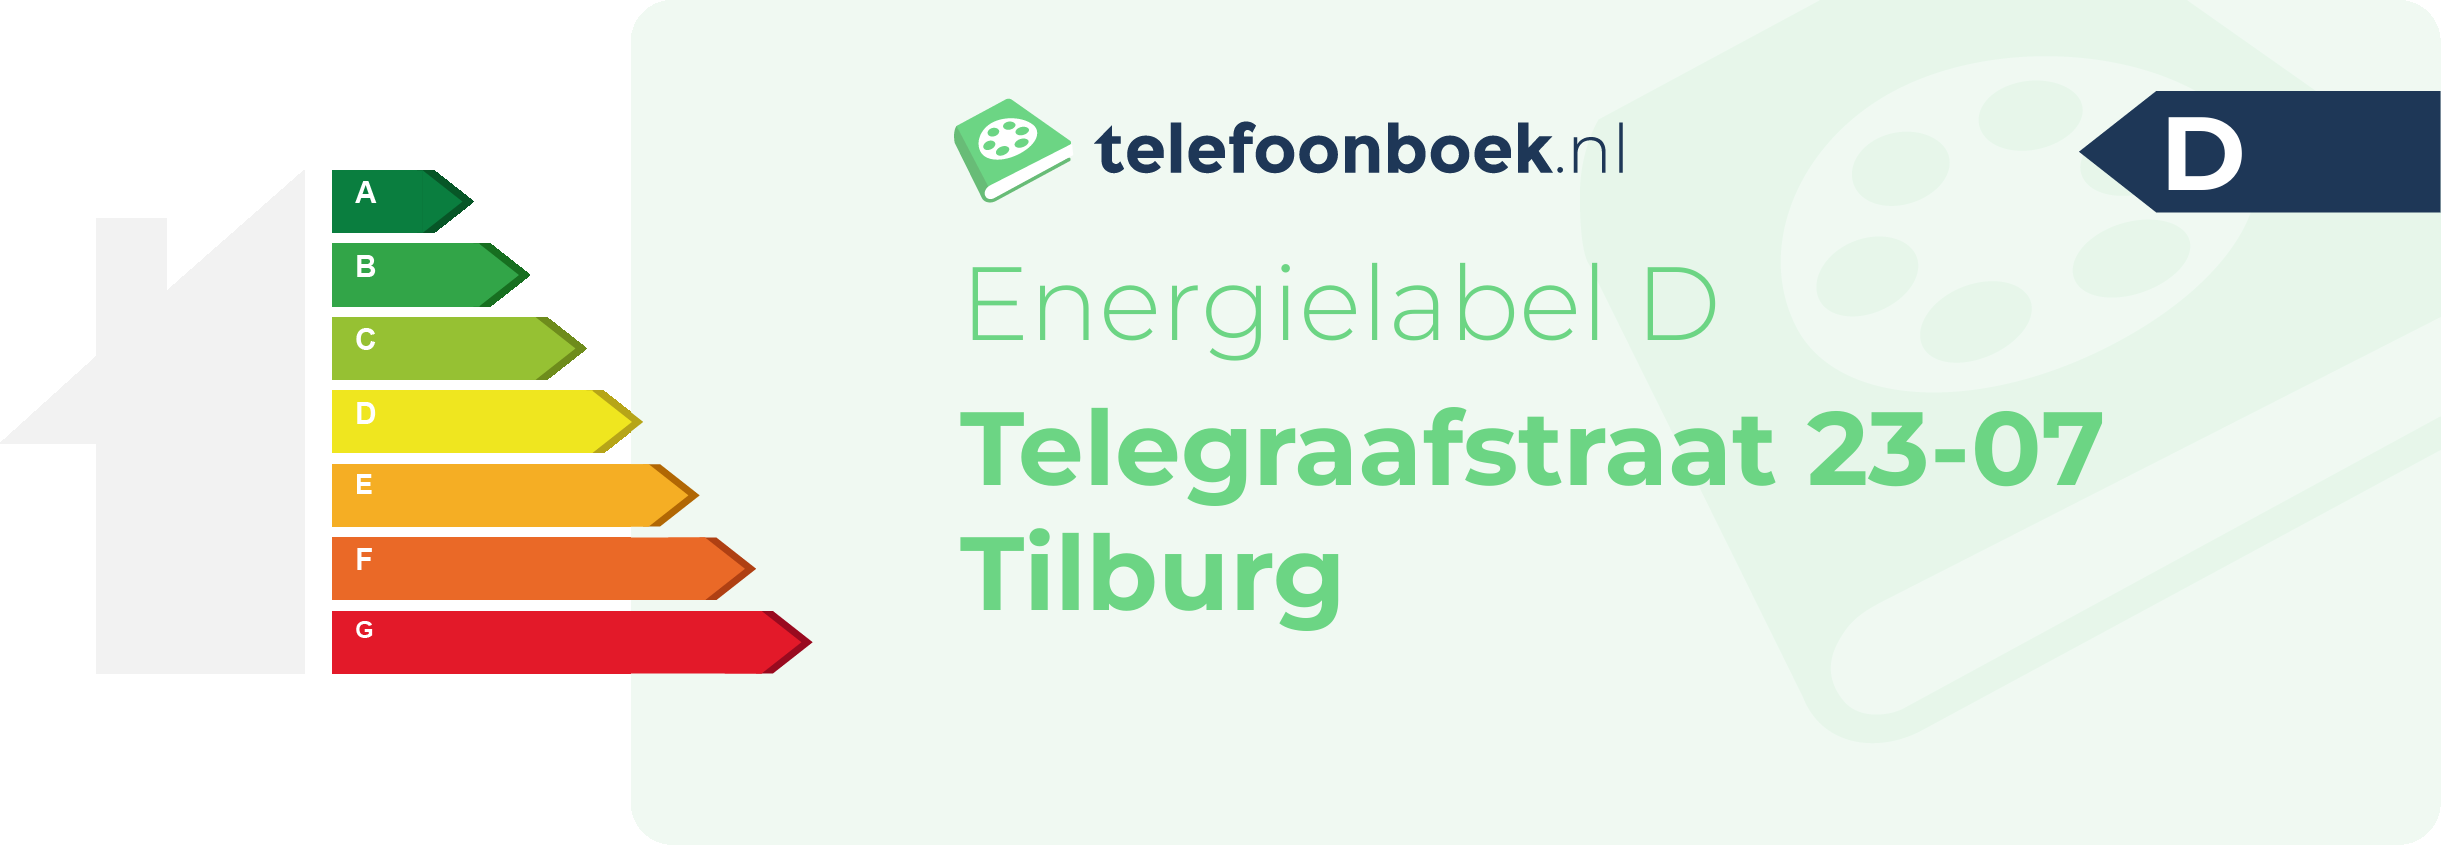 Energielabel Telegraafstraat 23-07 Tilburg